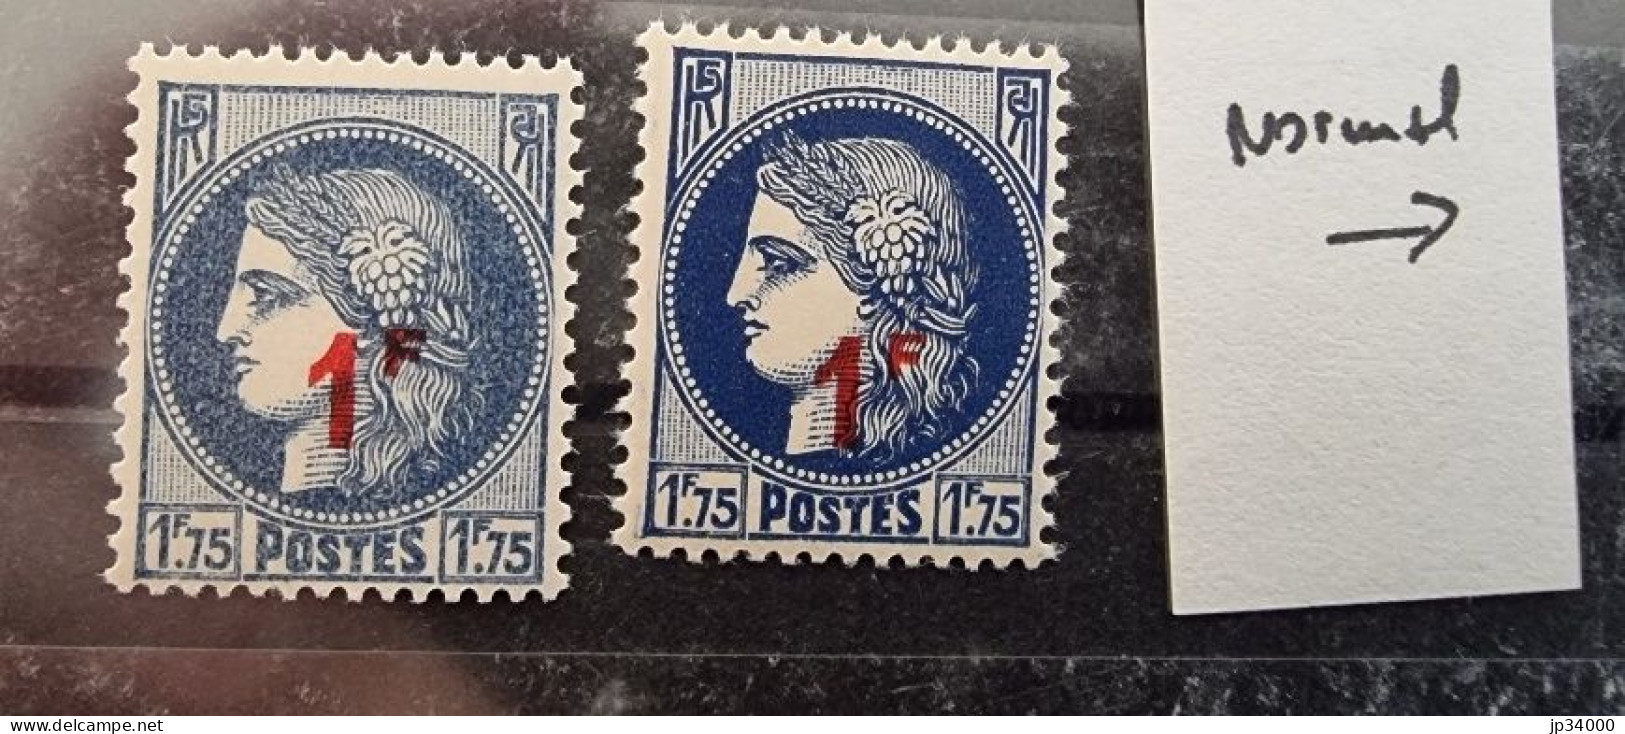 FRANCE Variété Yvert N° 486 Gris Bleu **MNH (la Variété Est Le Timbre De Gauche) - Unused Stamps